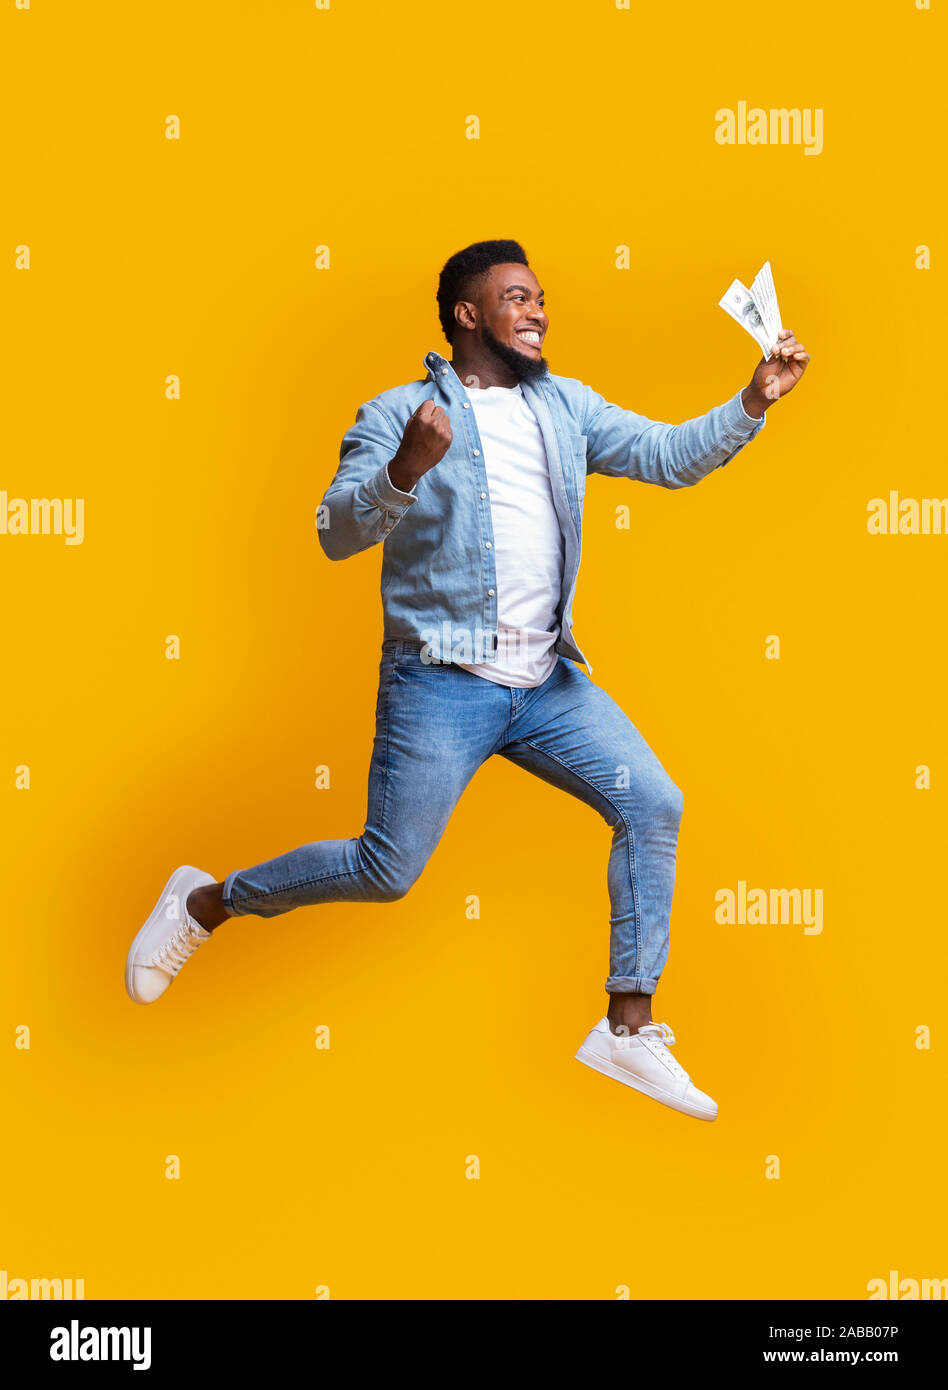 Euphorisch afro Mann springen mit Bargeld in der Hand auf gelbem Hintergrund Stockfoto